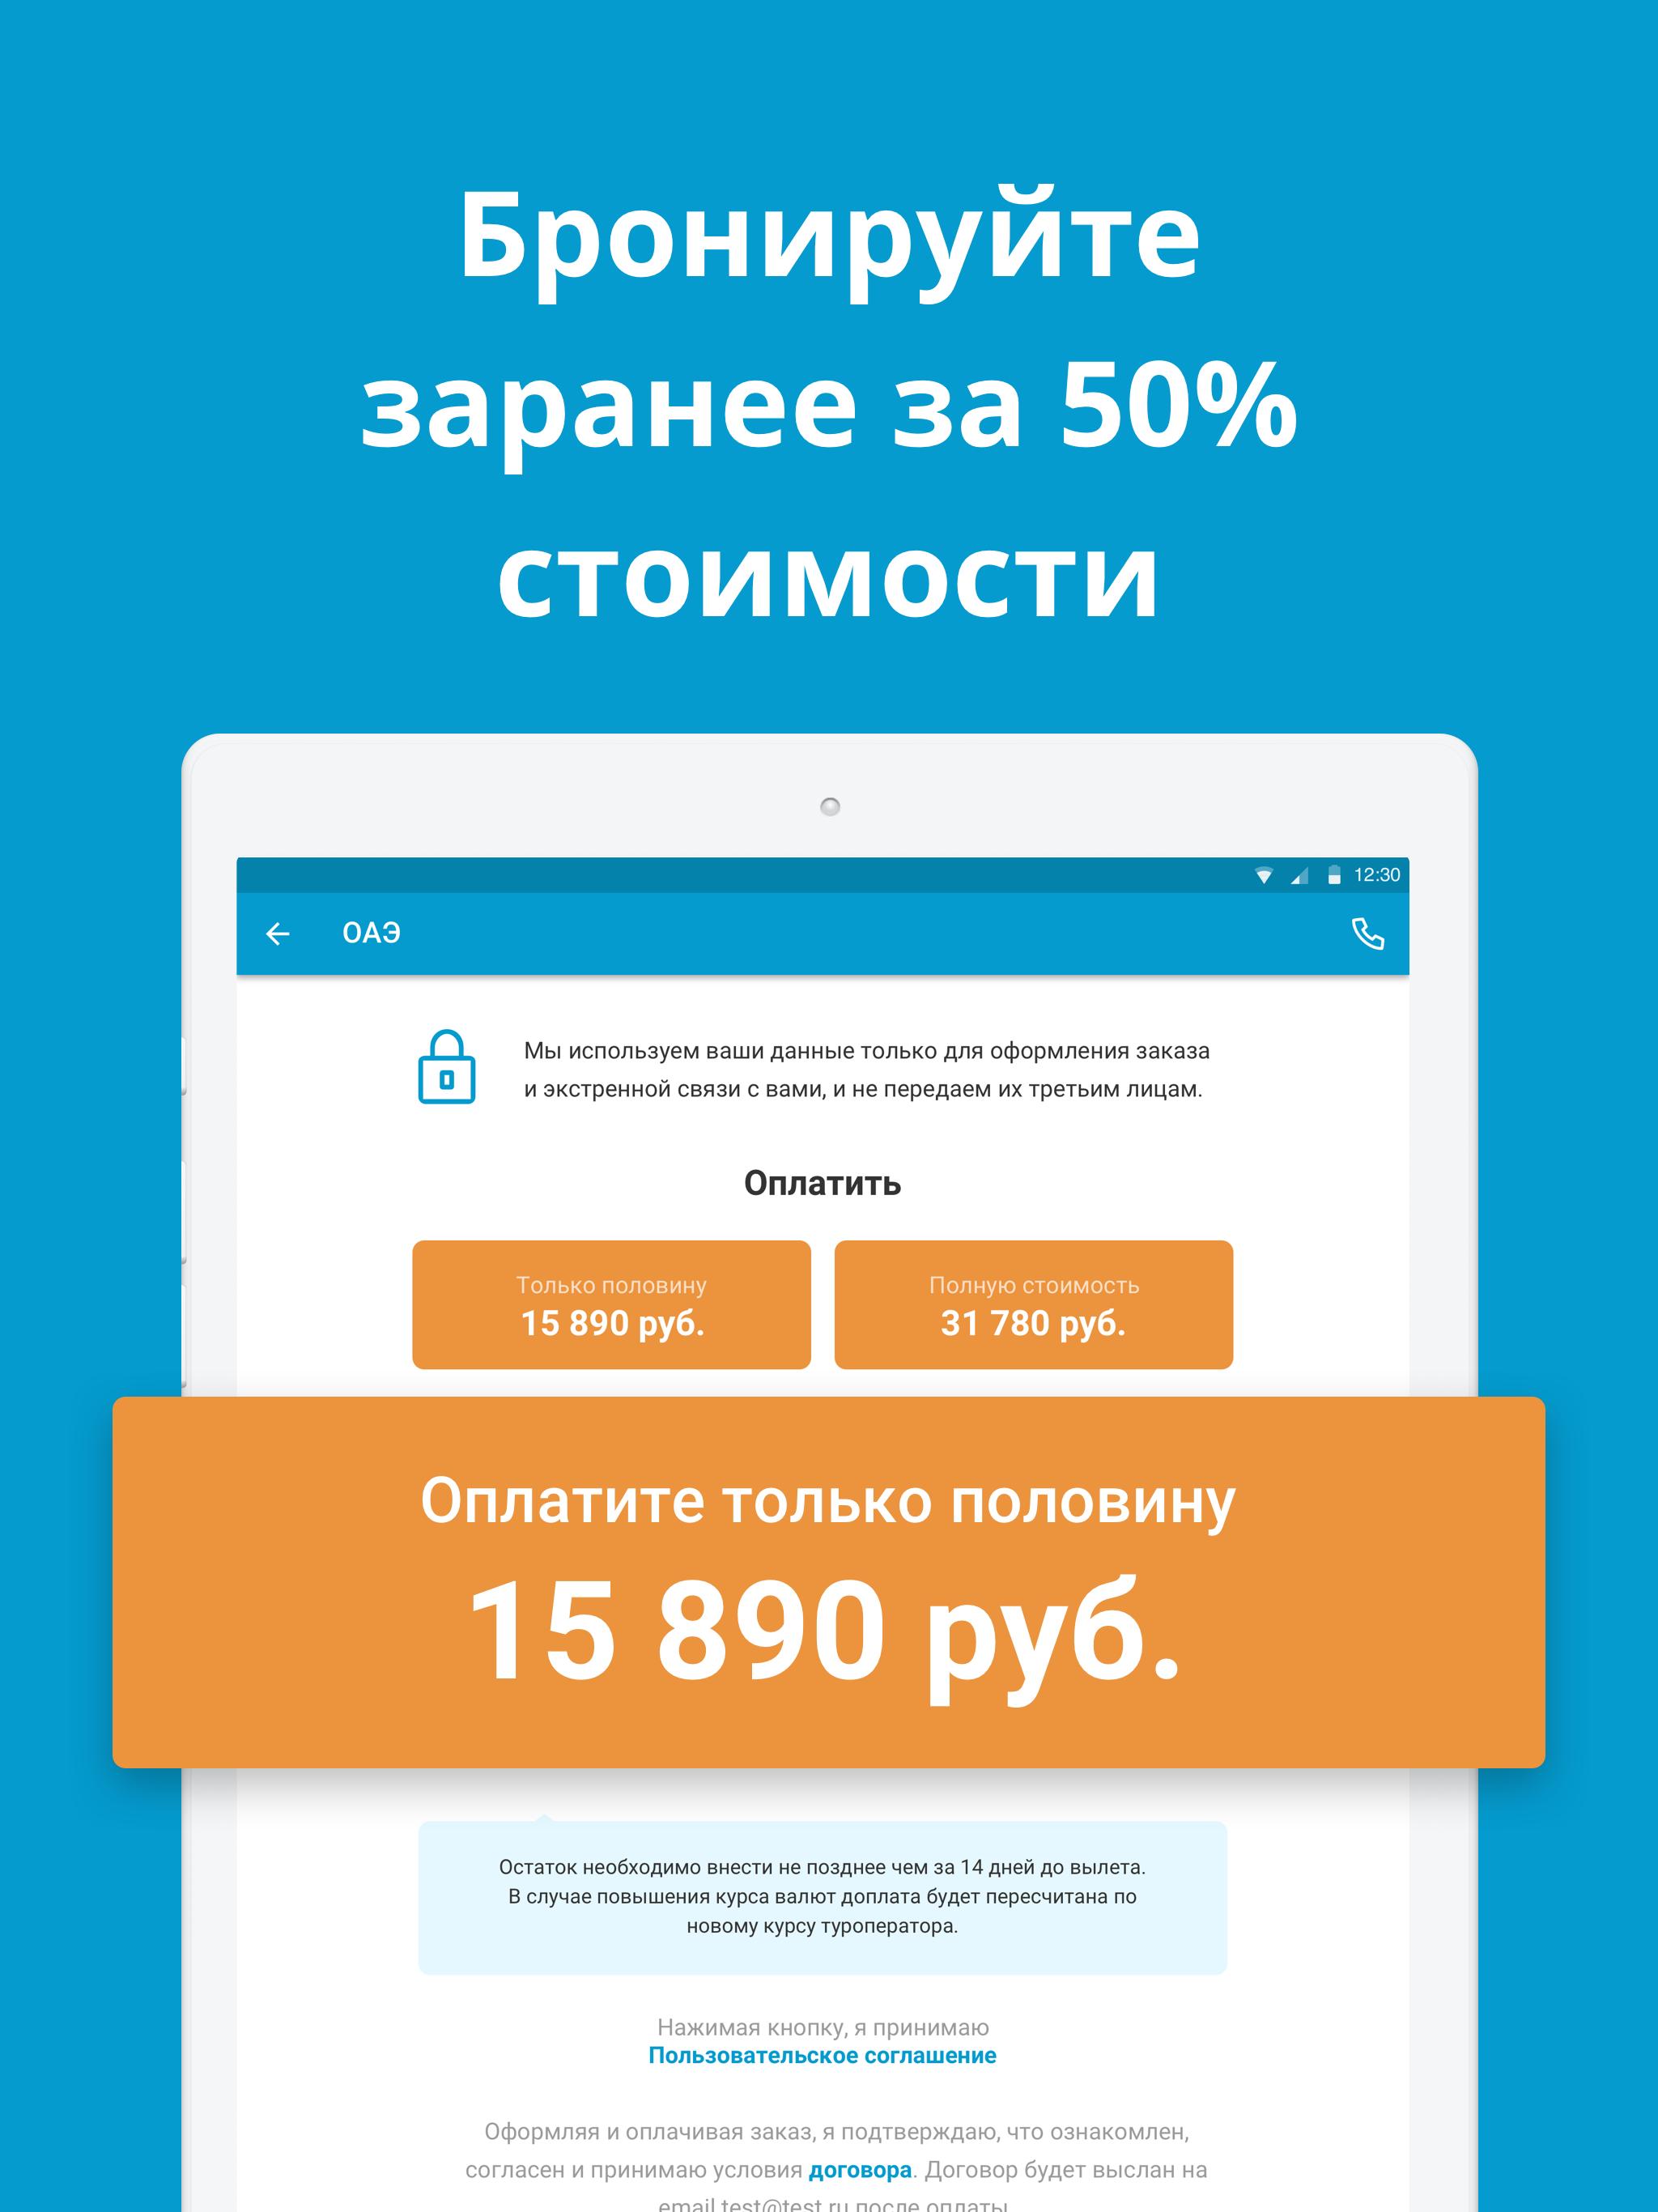 Travelata.ru Все горящие туры и путевки онлайн 3.6.7 Screenshot 13